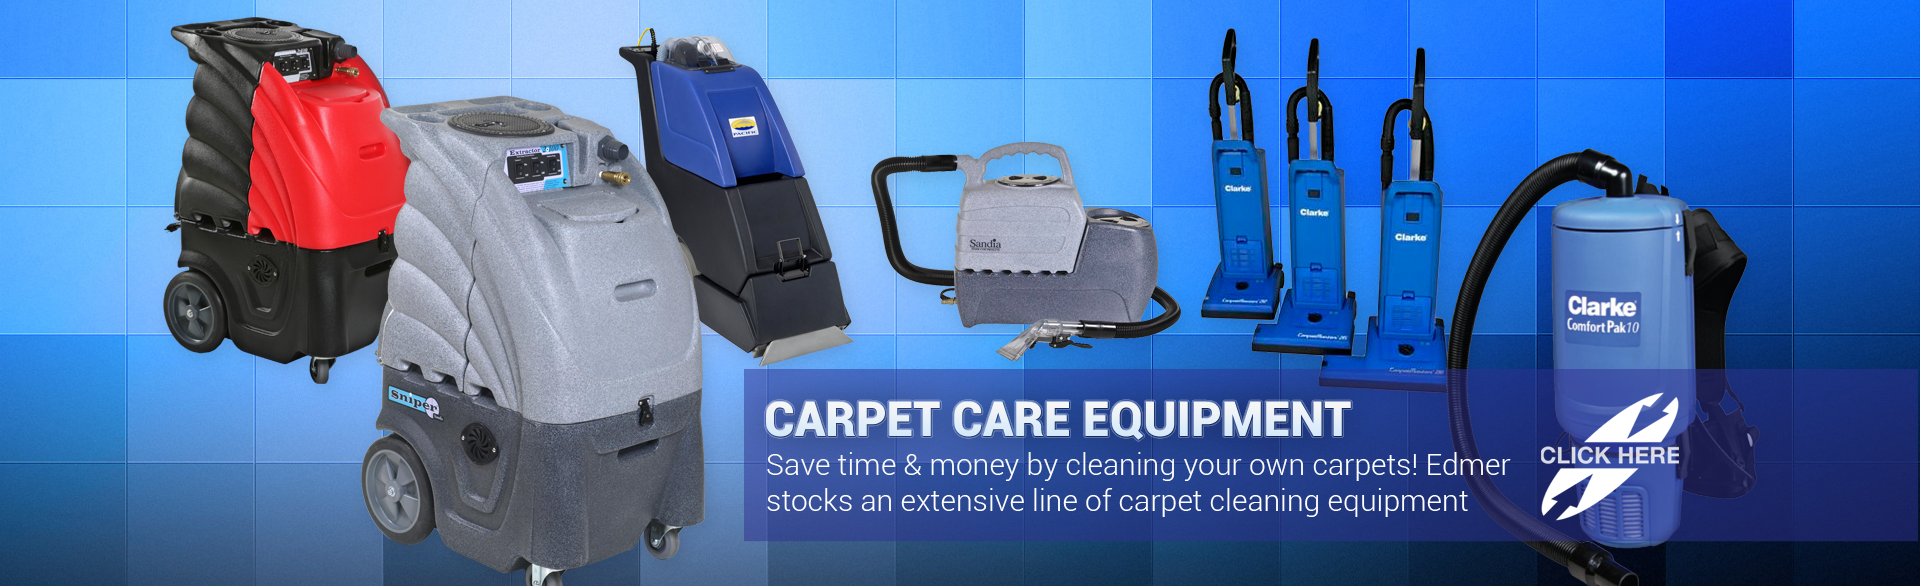 Carpet care equipment